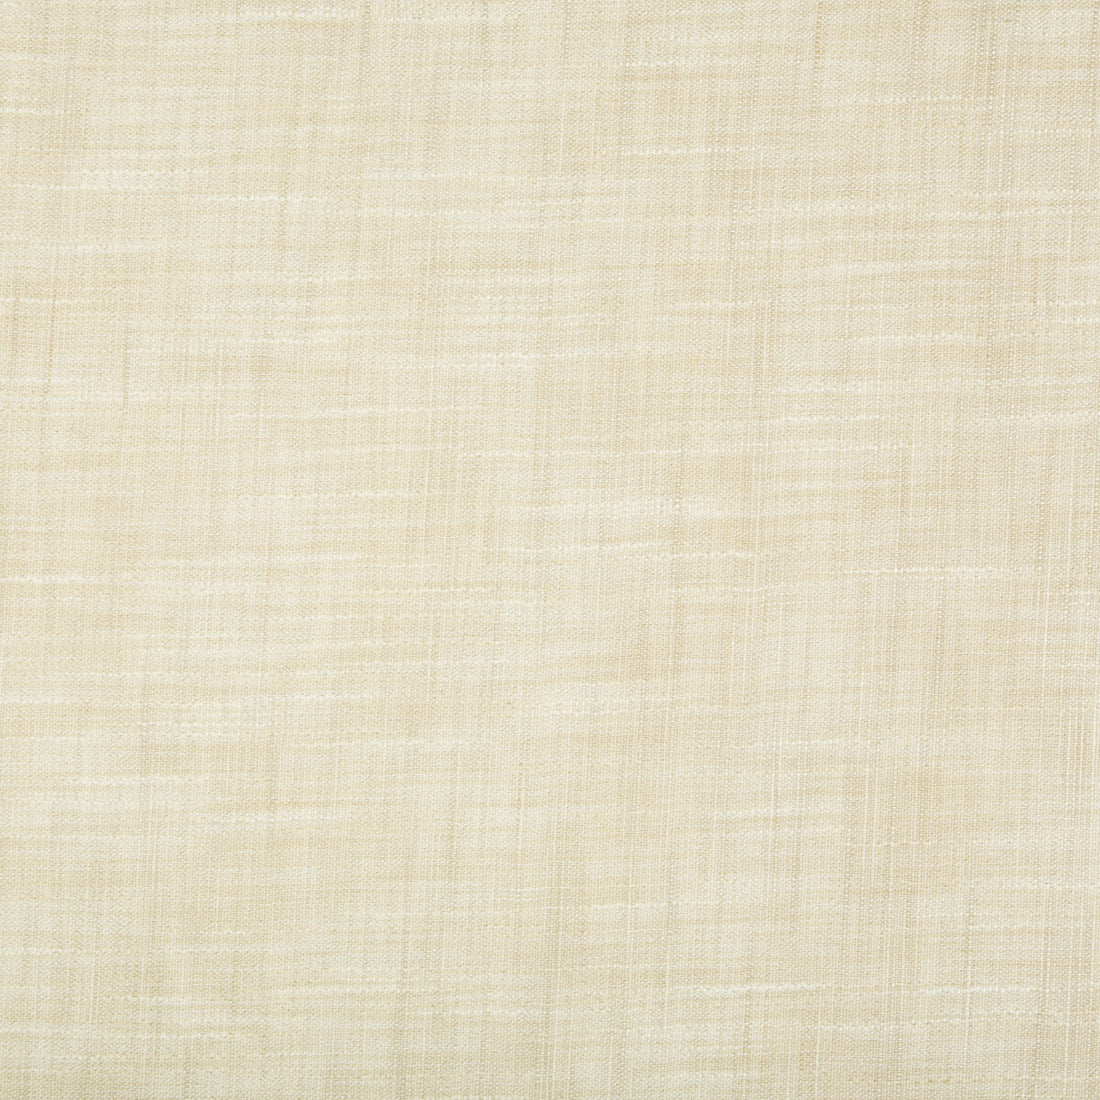 Kravet Basics fabric in 8813-1611 color - pattern 8813.1611.0 - by Kravet Basics